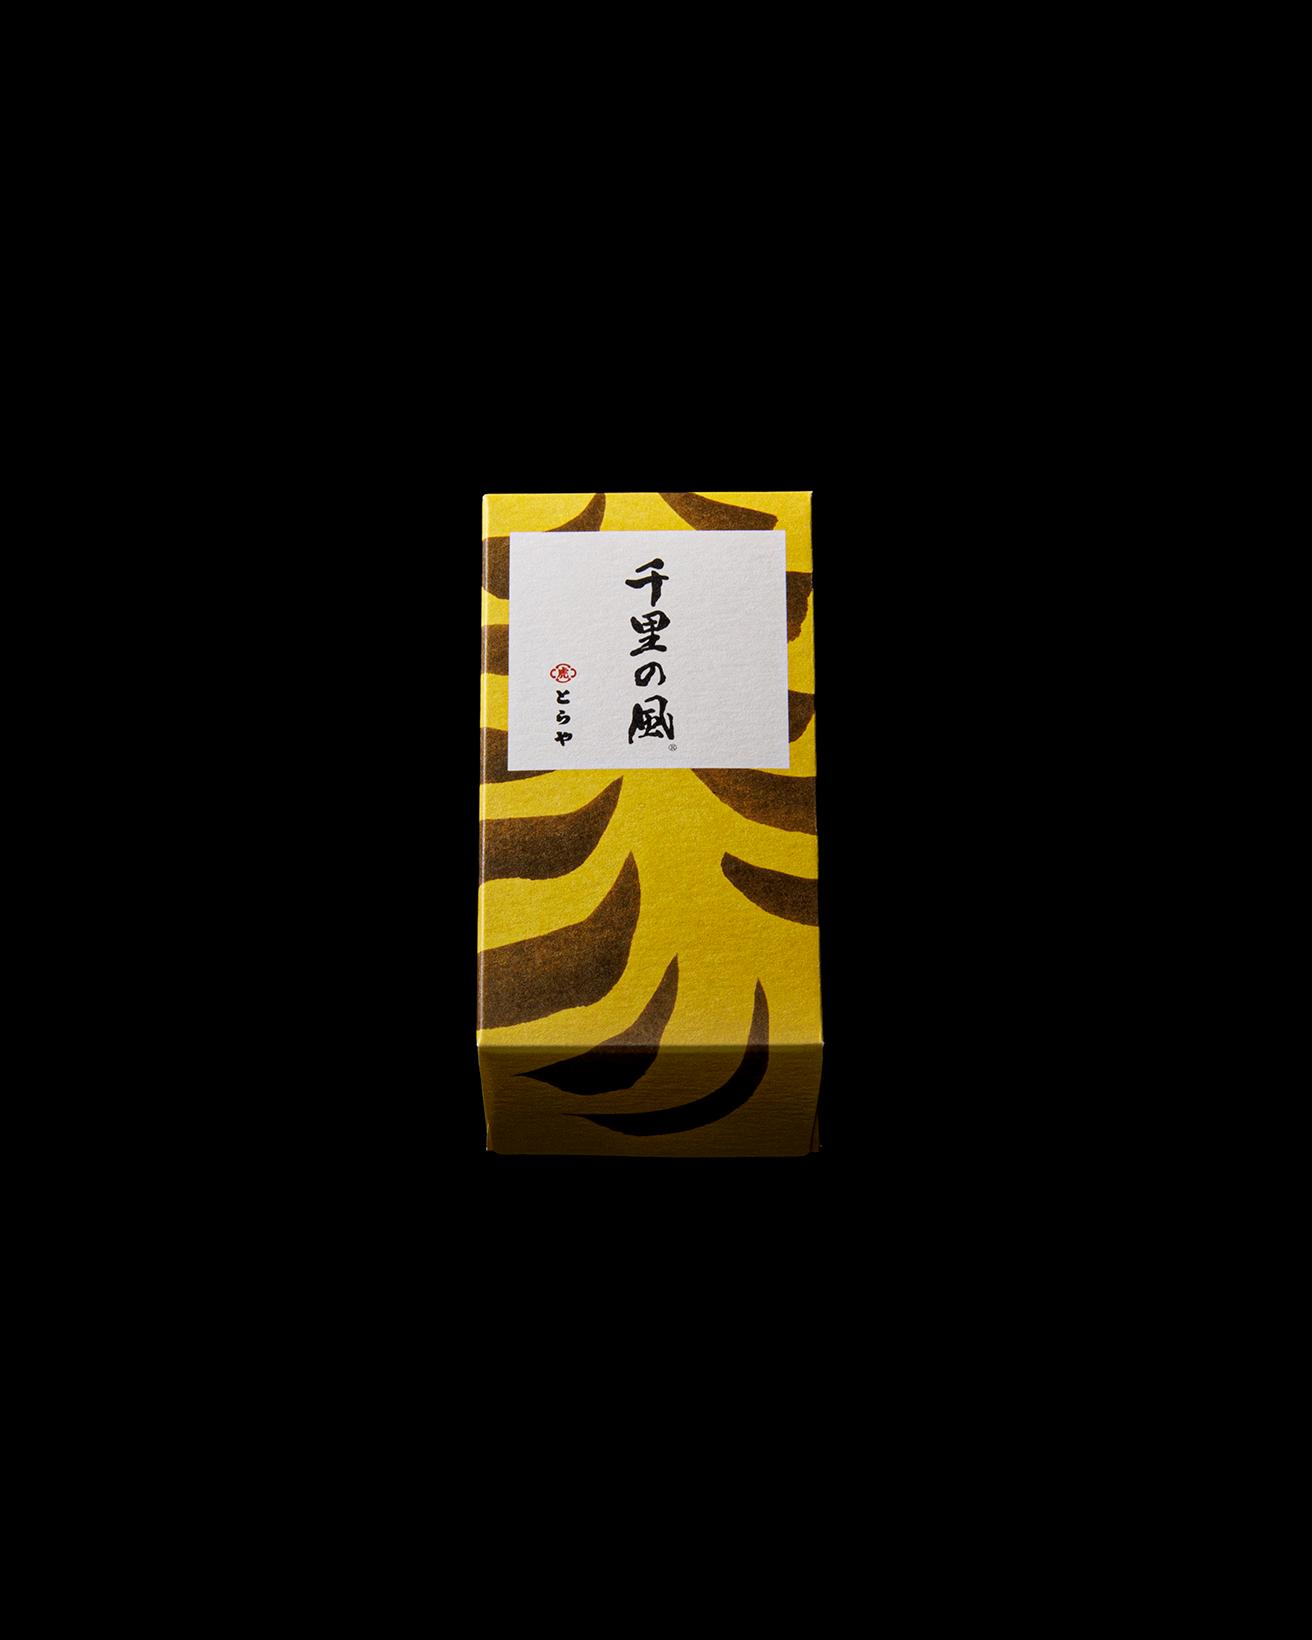 2015年に登場した〈中形〉タイプ。虎斑柄のパッケージは〈とらや〉のクリエイティブディレクションを務める〈サン・アド〉によるデザイン。〈千里の風〉中形1,944円。賞味期限：製造から140日。